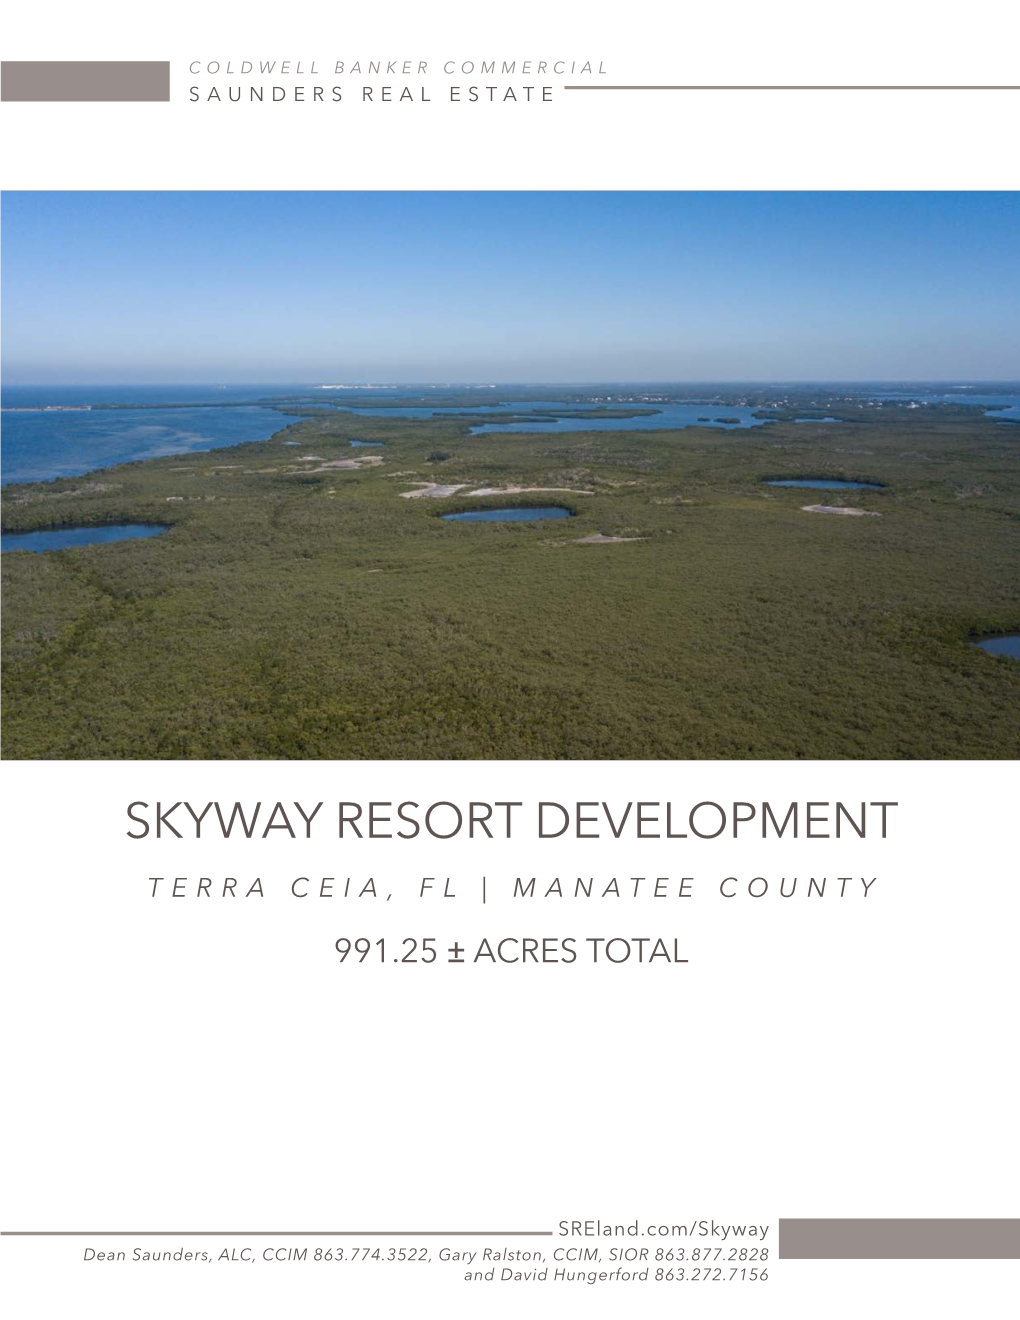 Skyway Resort Development